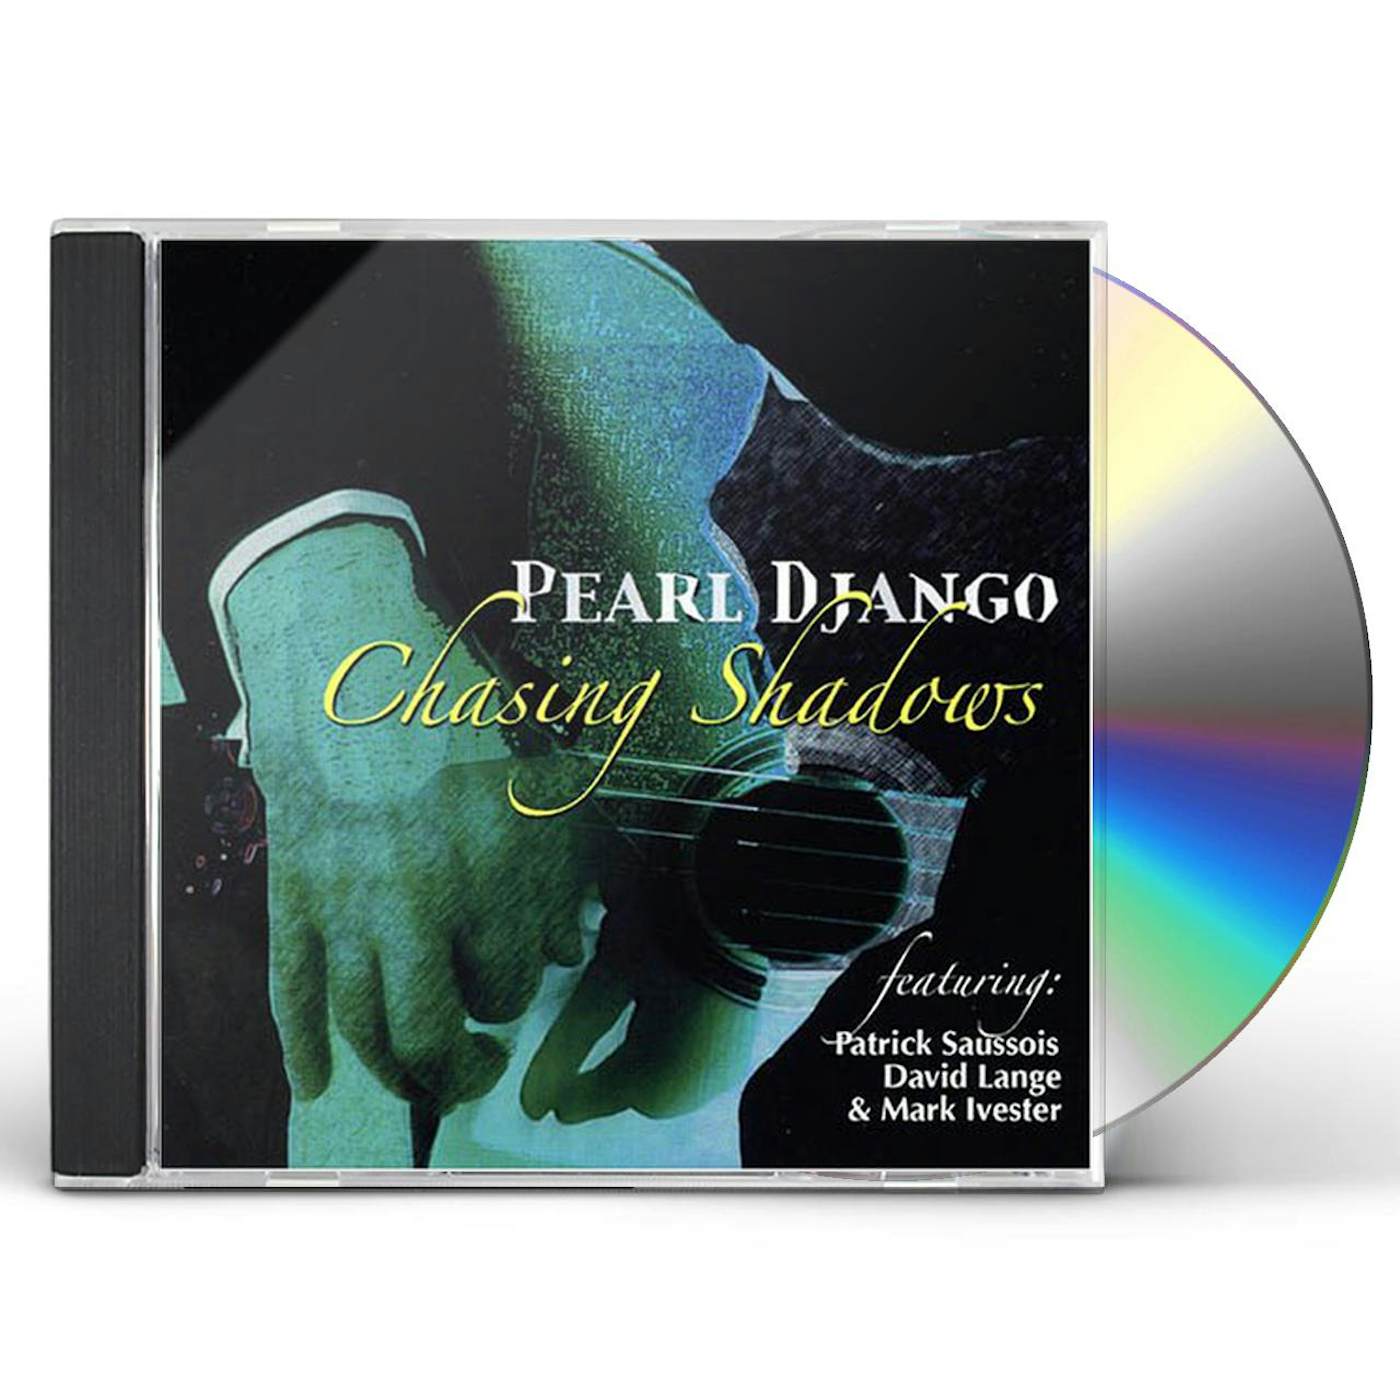 Pearl Django CHASING SHADOWS CD